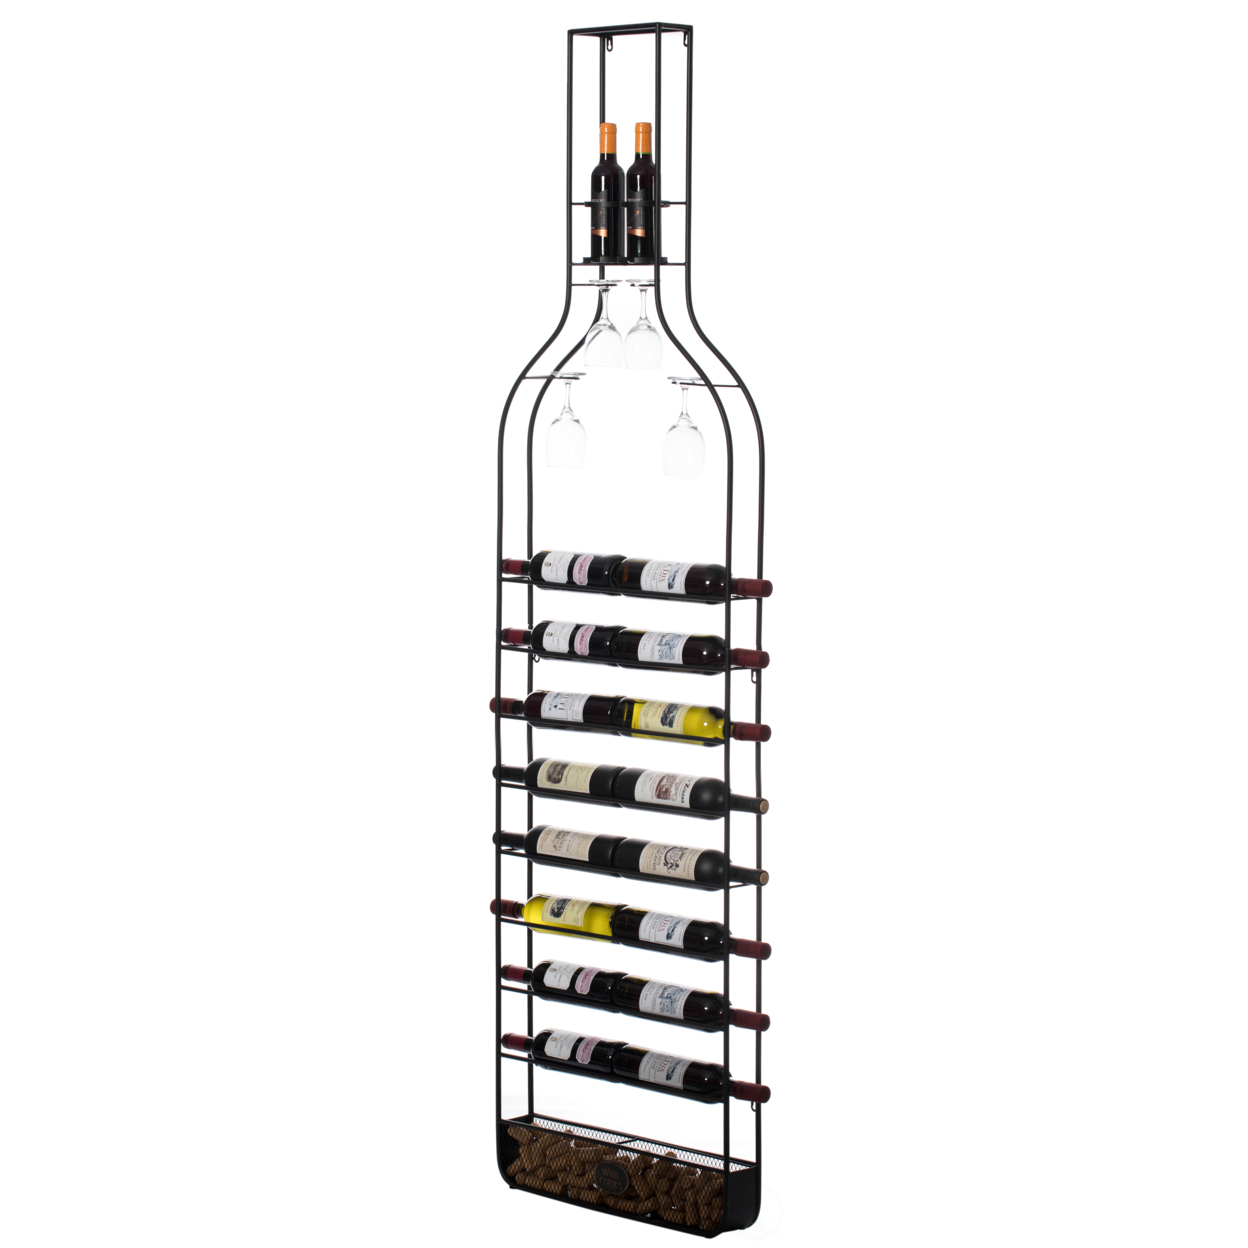 Big Vintage Decorative Metal Bottle Shaped Wine Bottle Holder For Living Room, Dining, Or Entryway